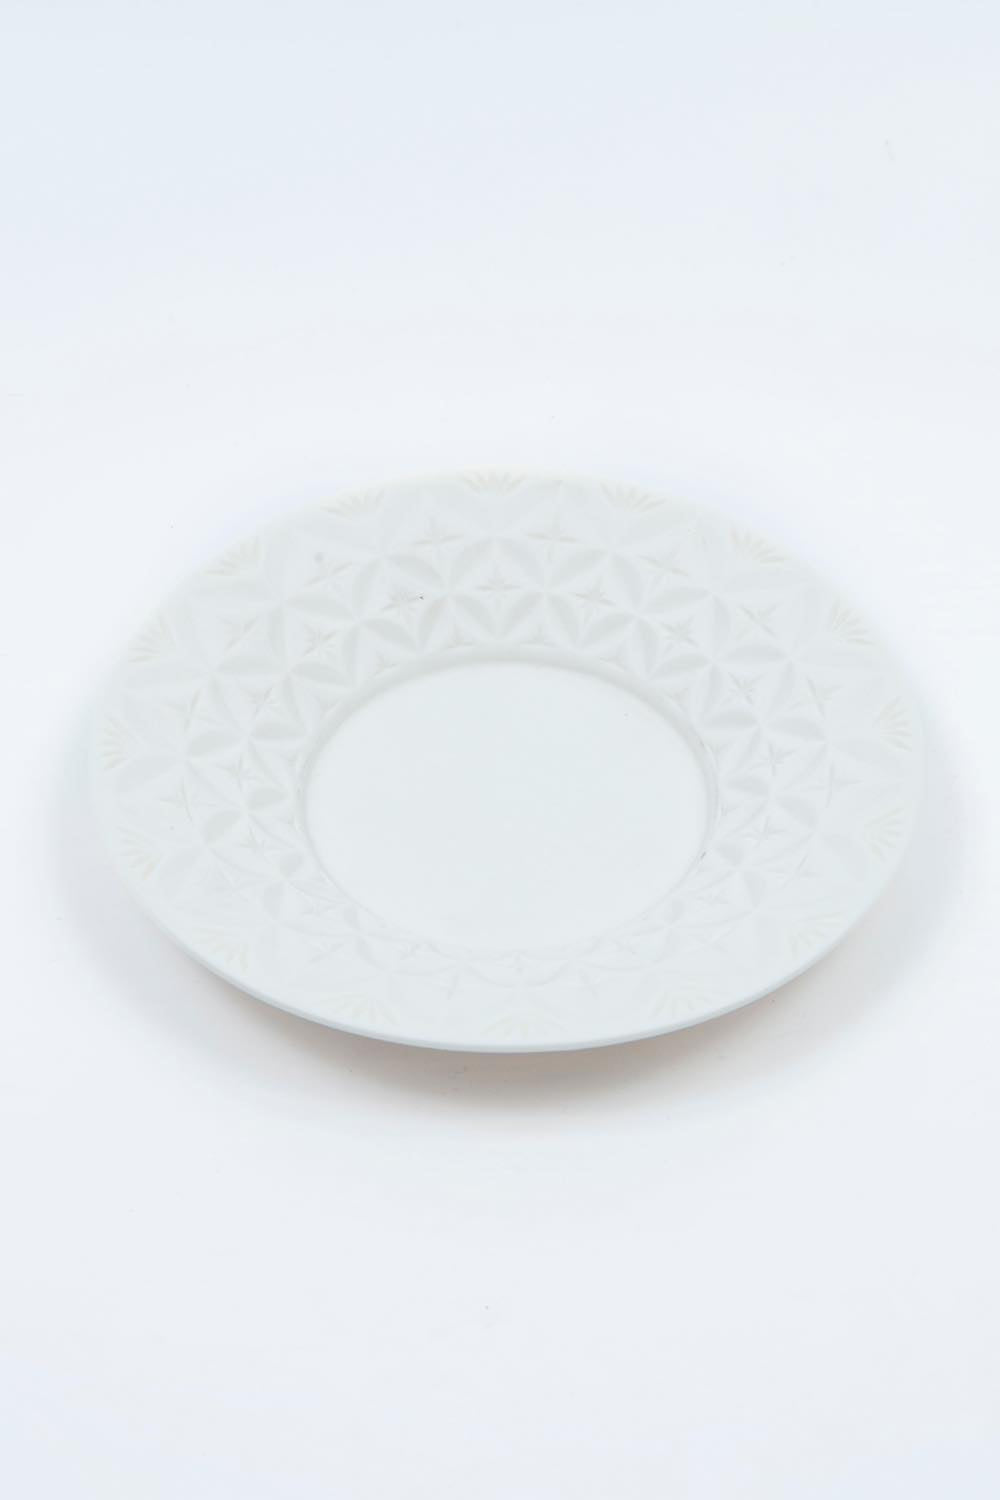 HINOMIYA 「kiriko」 saucer plate -white-